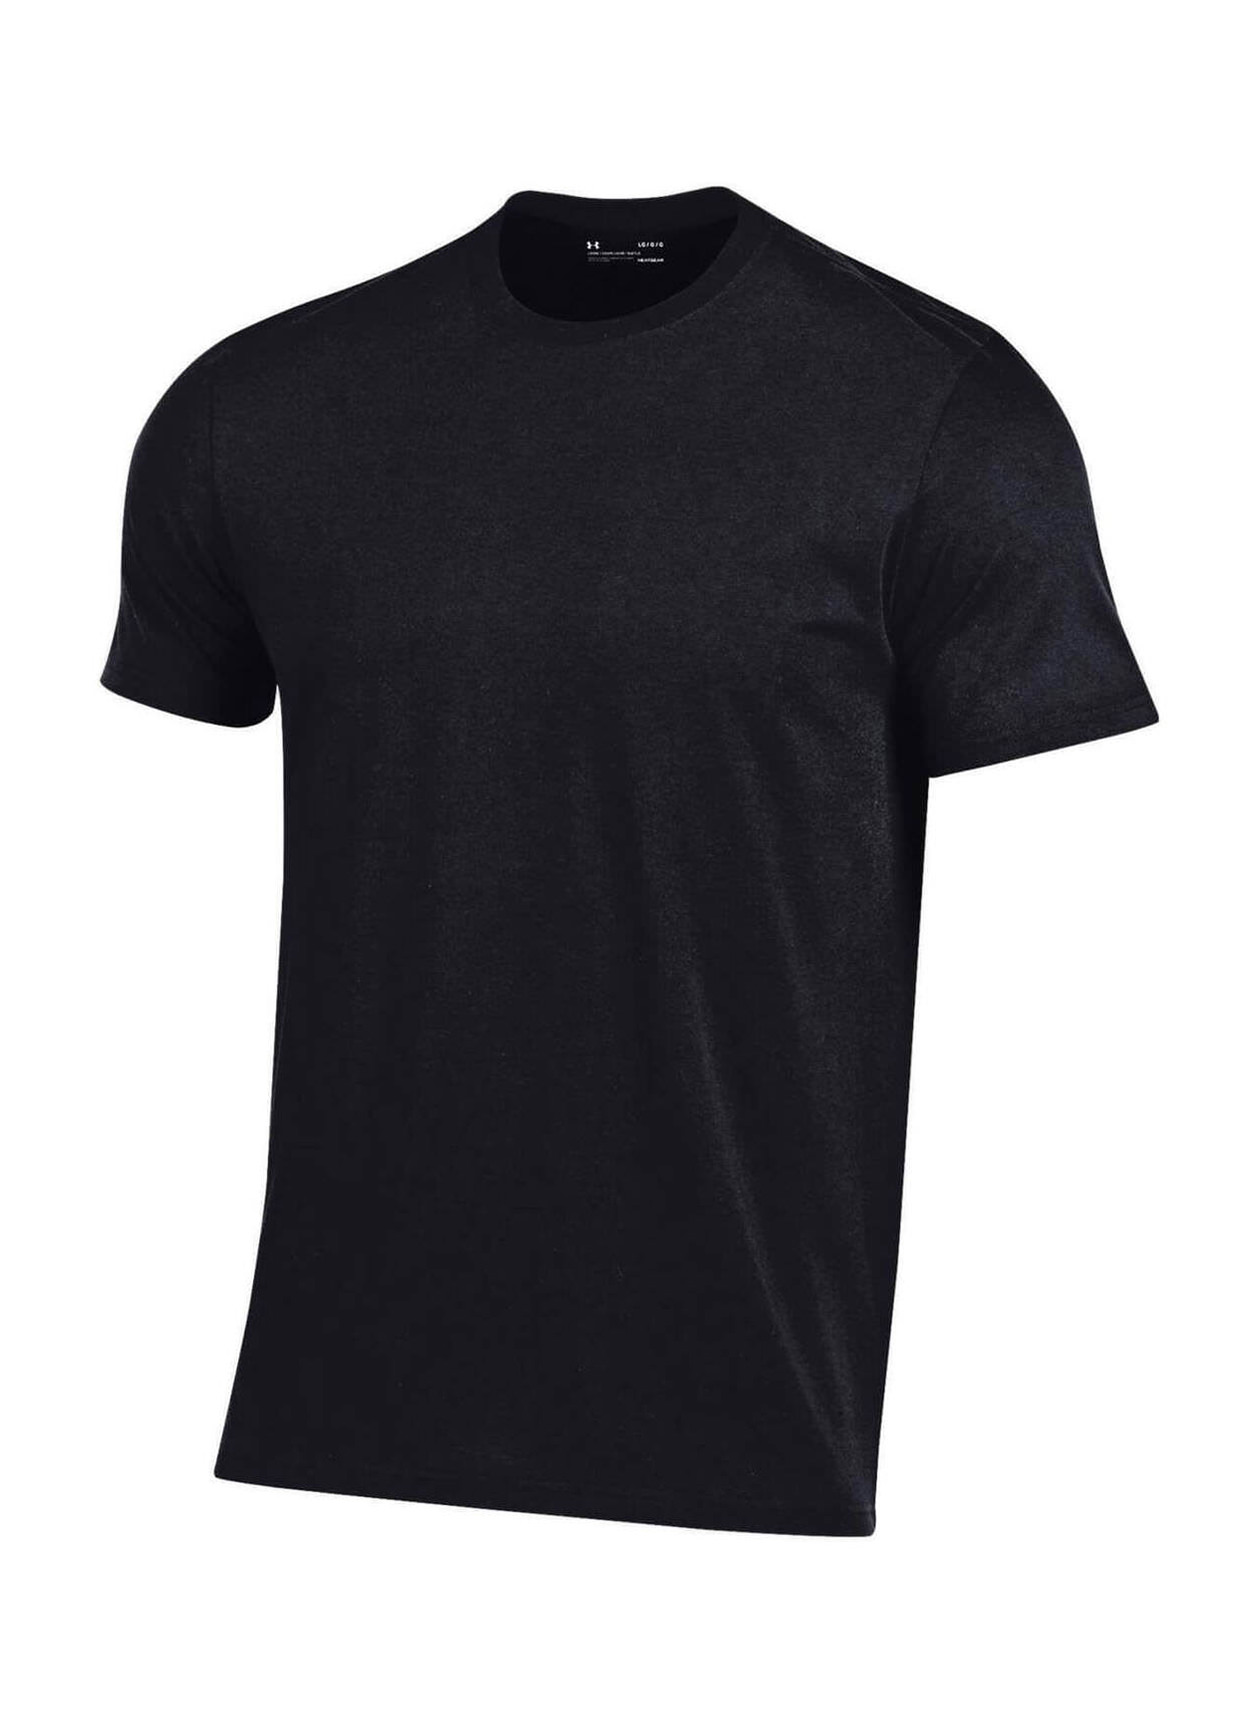 Under Armour Men's Black Performance Cotton T-Shirt